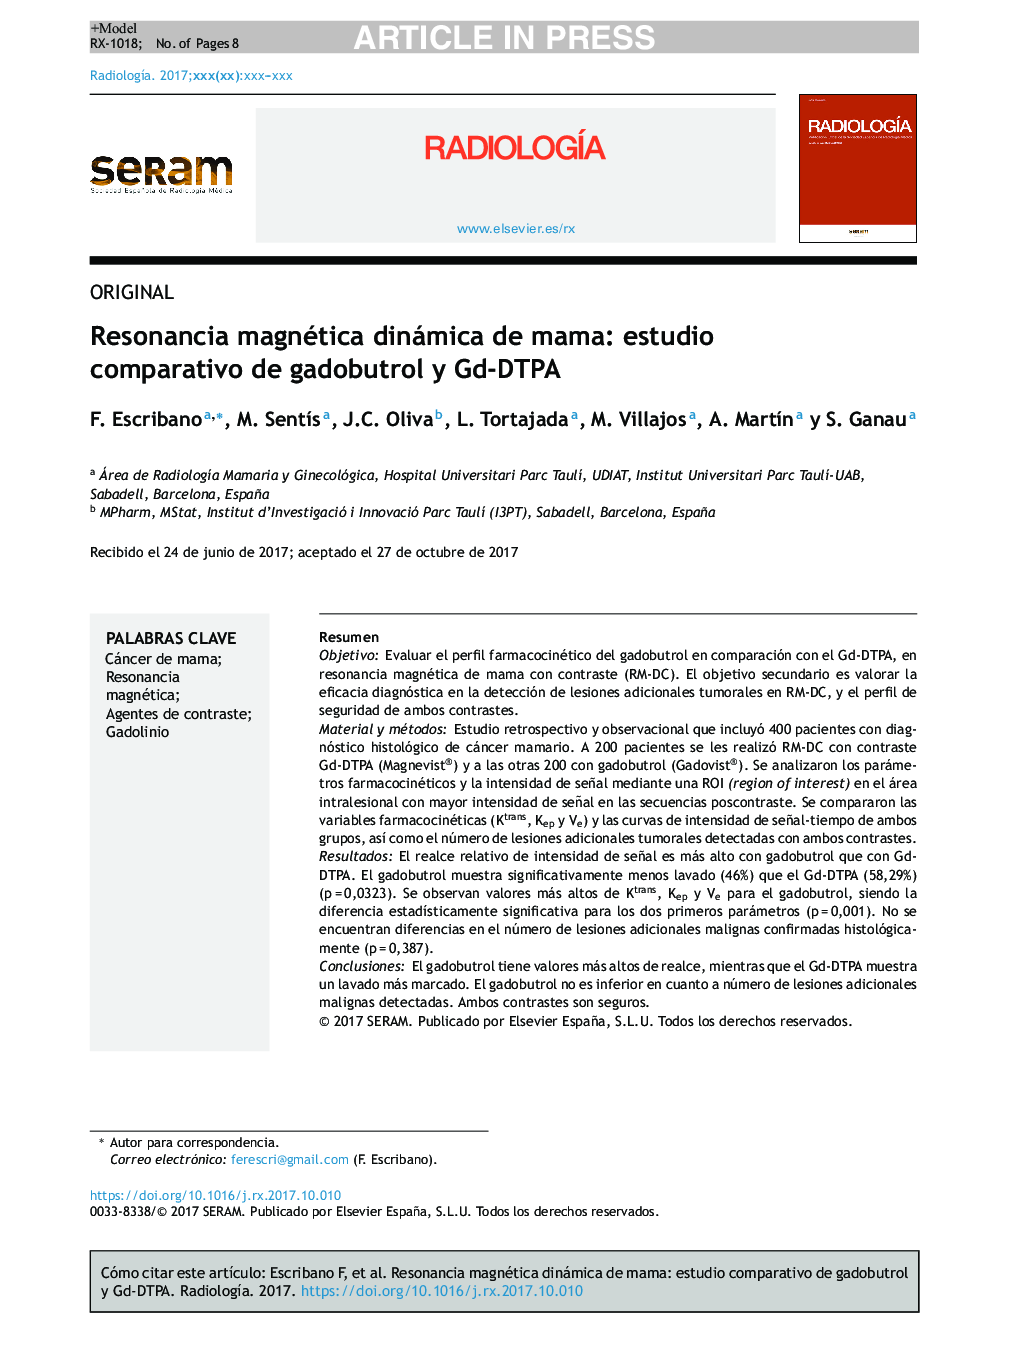 Resonancia magnética dinámica de mama: estudio comparativo de gadobutrol y Gd-DTPA